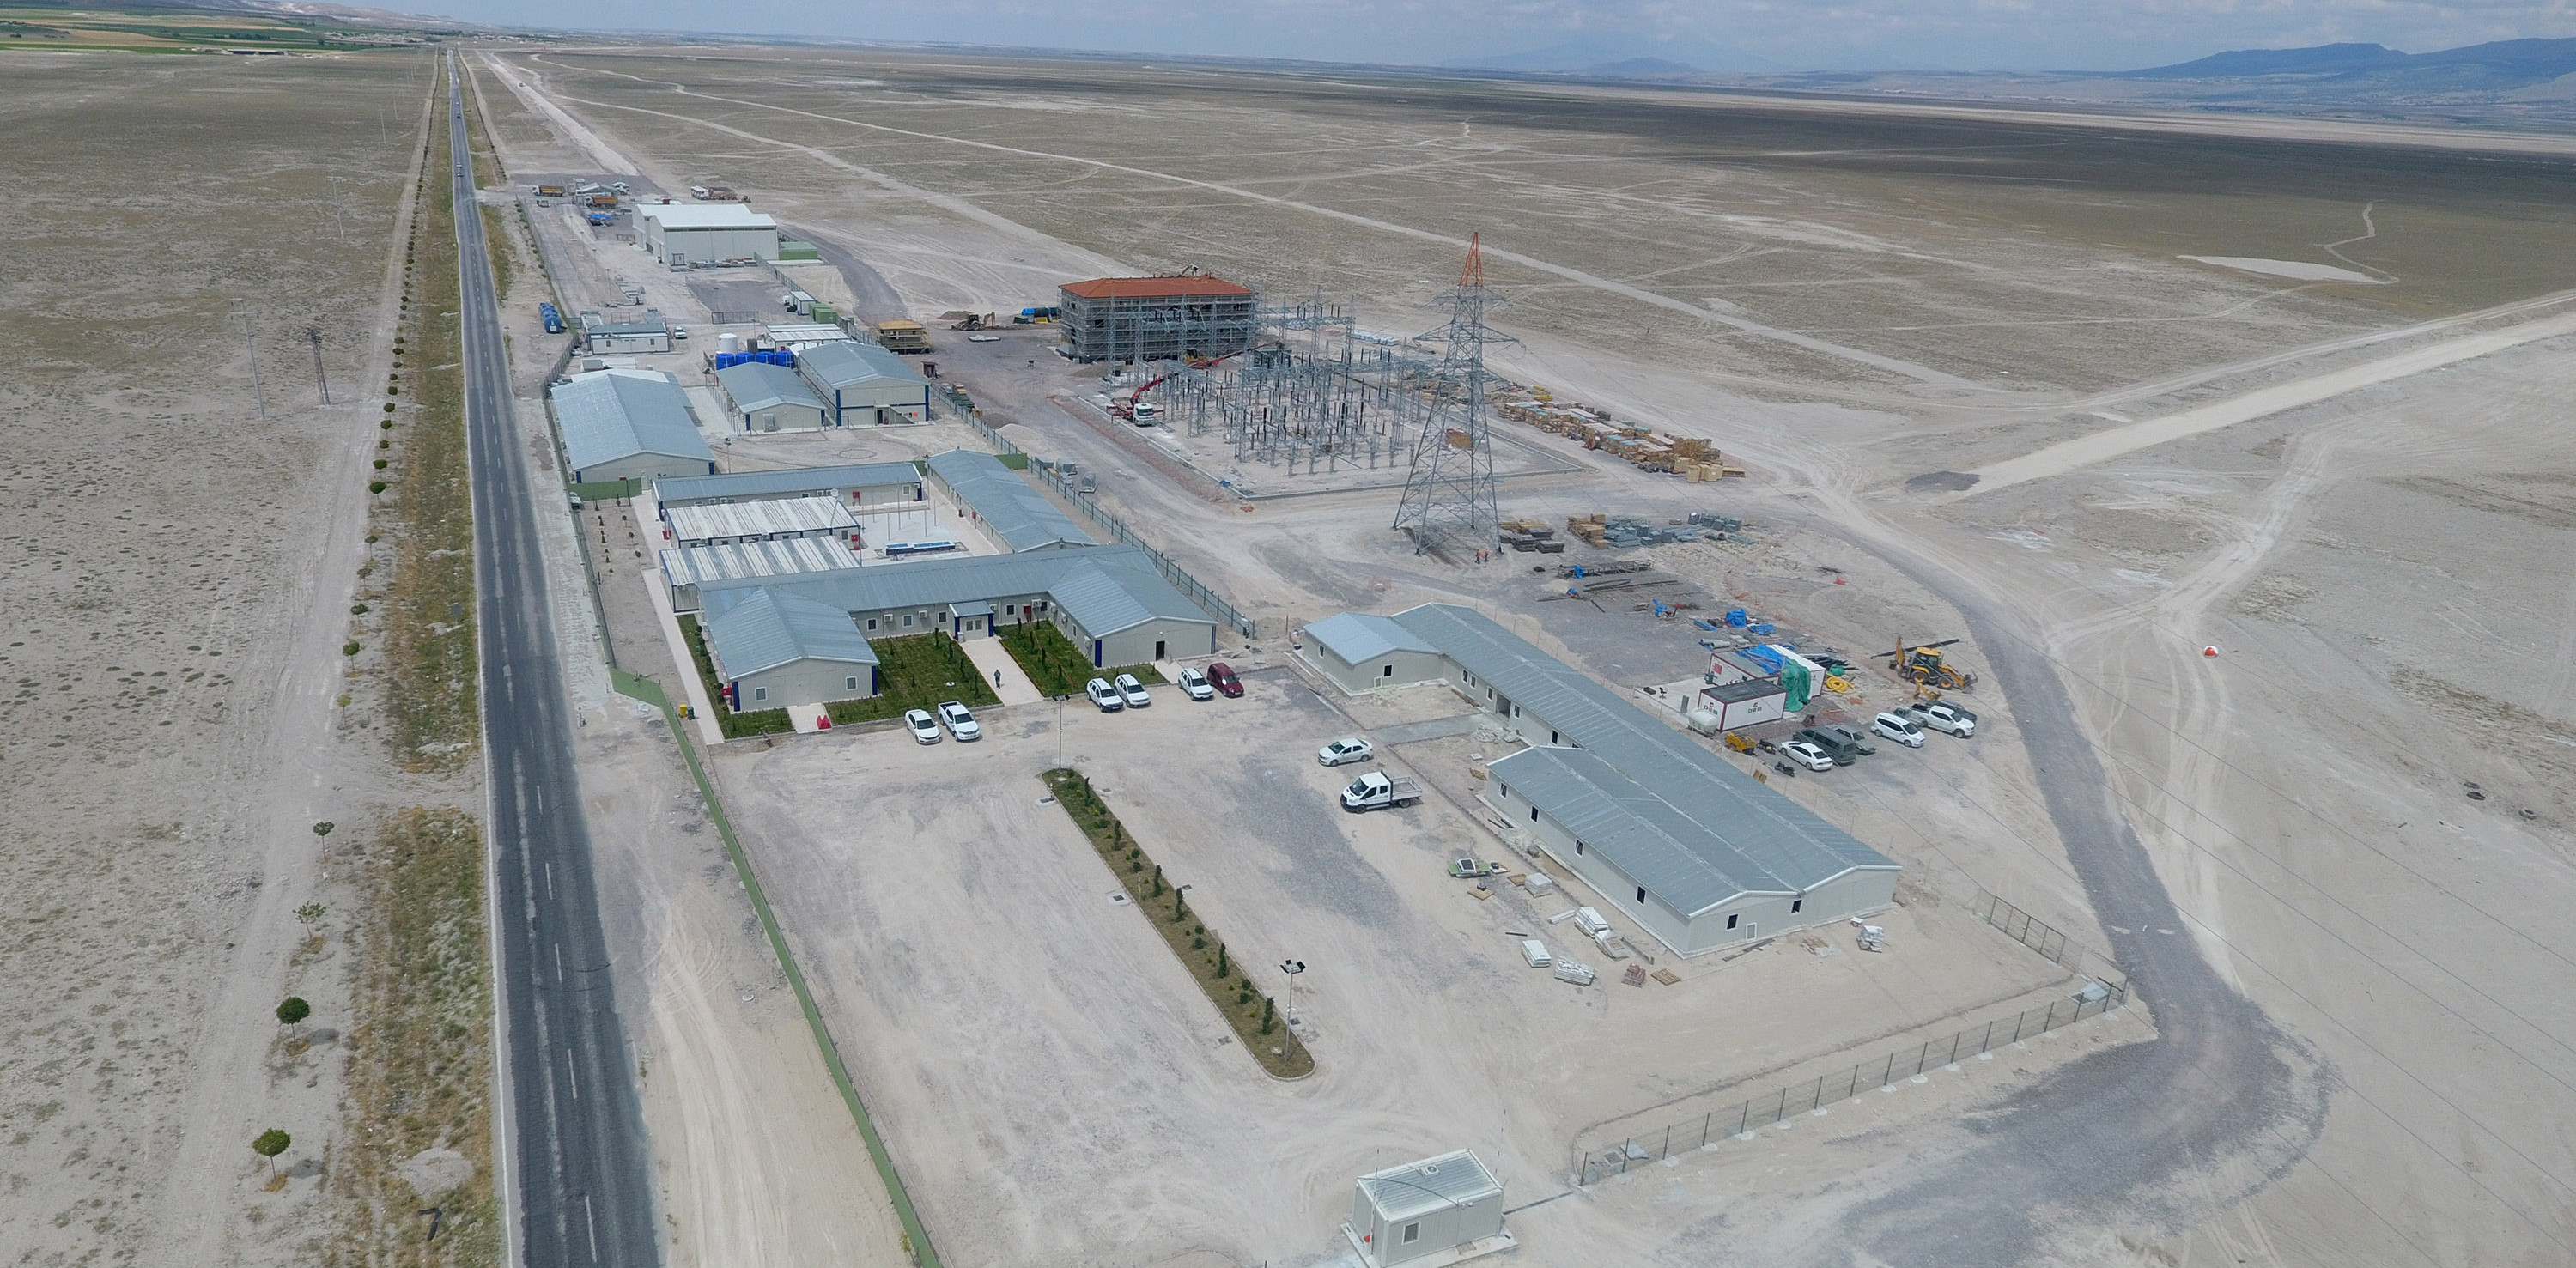 Karapınar, şantiye çalışmalarına yeni başlanan bölgeye kurulacak yıllık 1,7 milyar kilovatsaat elektrik üretmesi beklenen santralle Türkiye'nin enerji üssü oluyor.